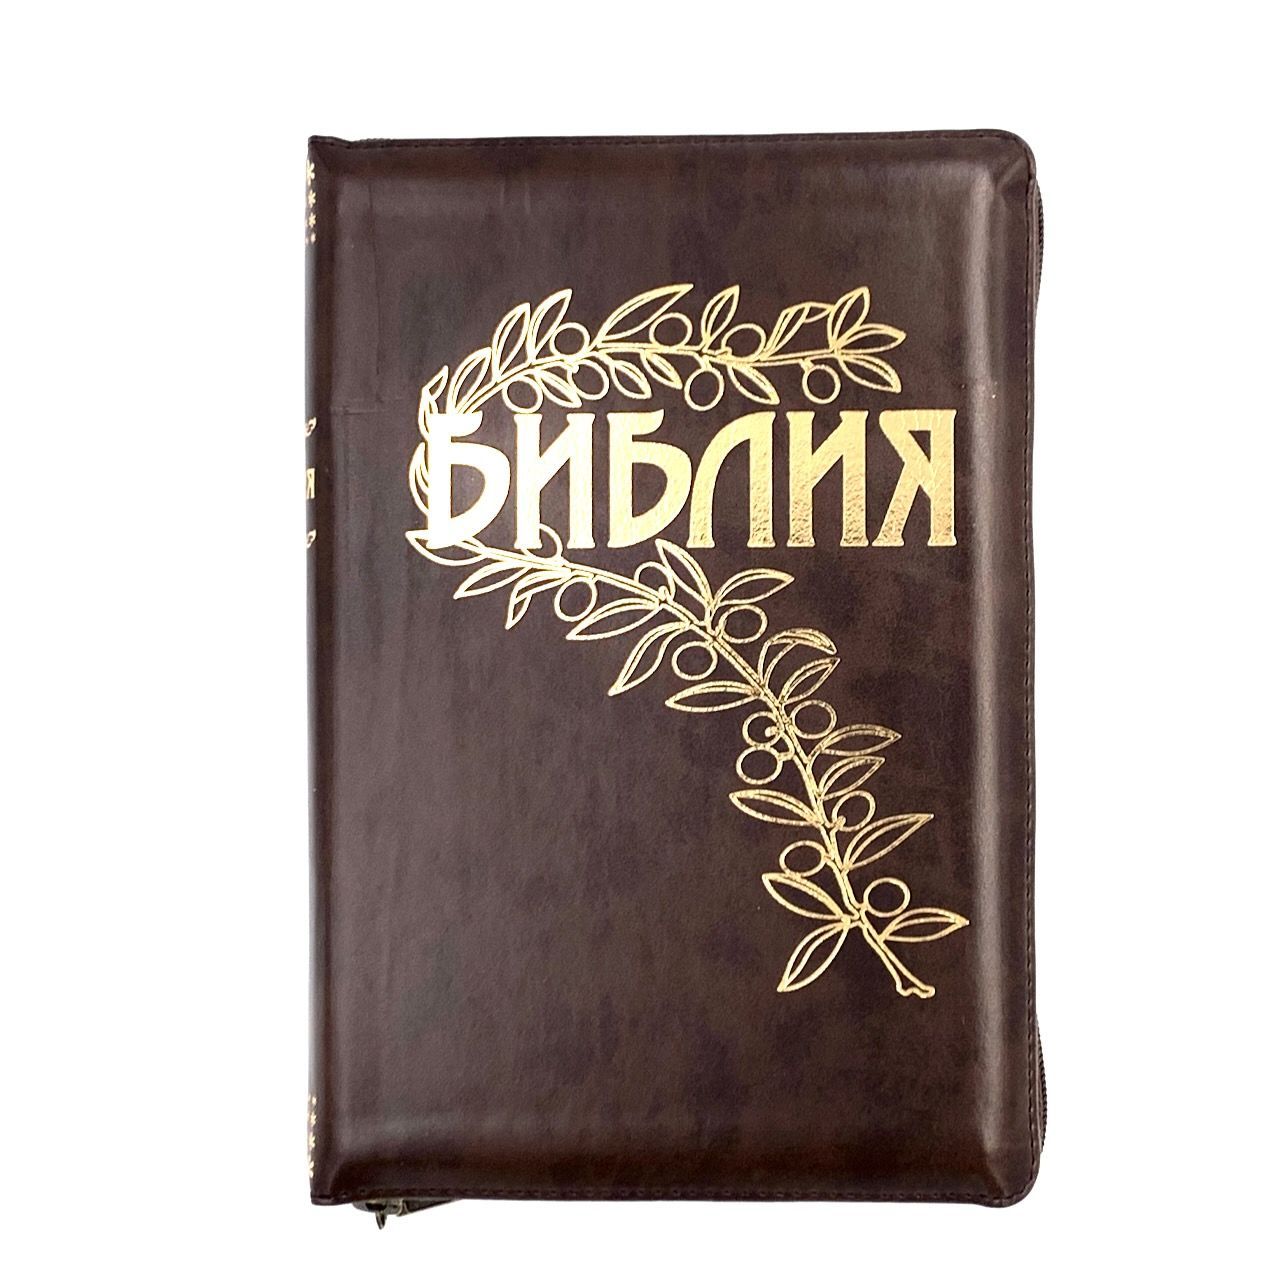 Библия Геце "с оливковой ветвью" 063z формат  (145*215 мм), чуть больше среднего  (прошитая), цвет коричневый переплет из искусственной кожи на молнии, золотые страницы, закладка, код 11651